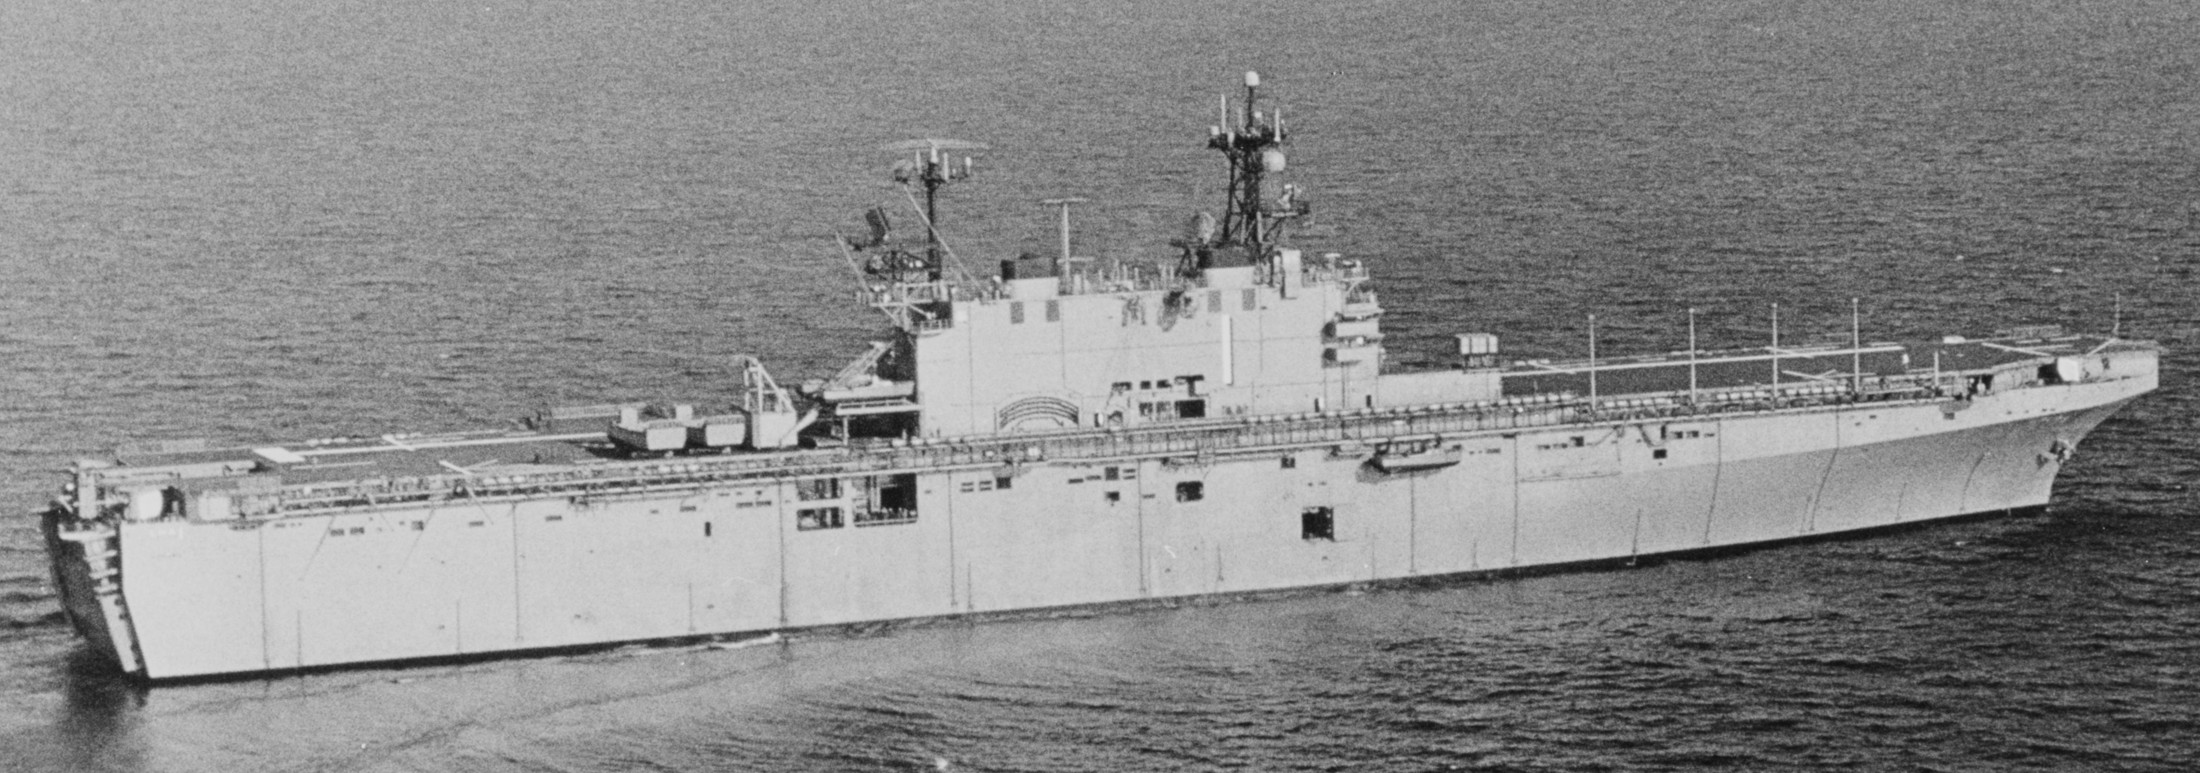 lha-1 uss tarawa amphibious assault ship us navy 11